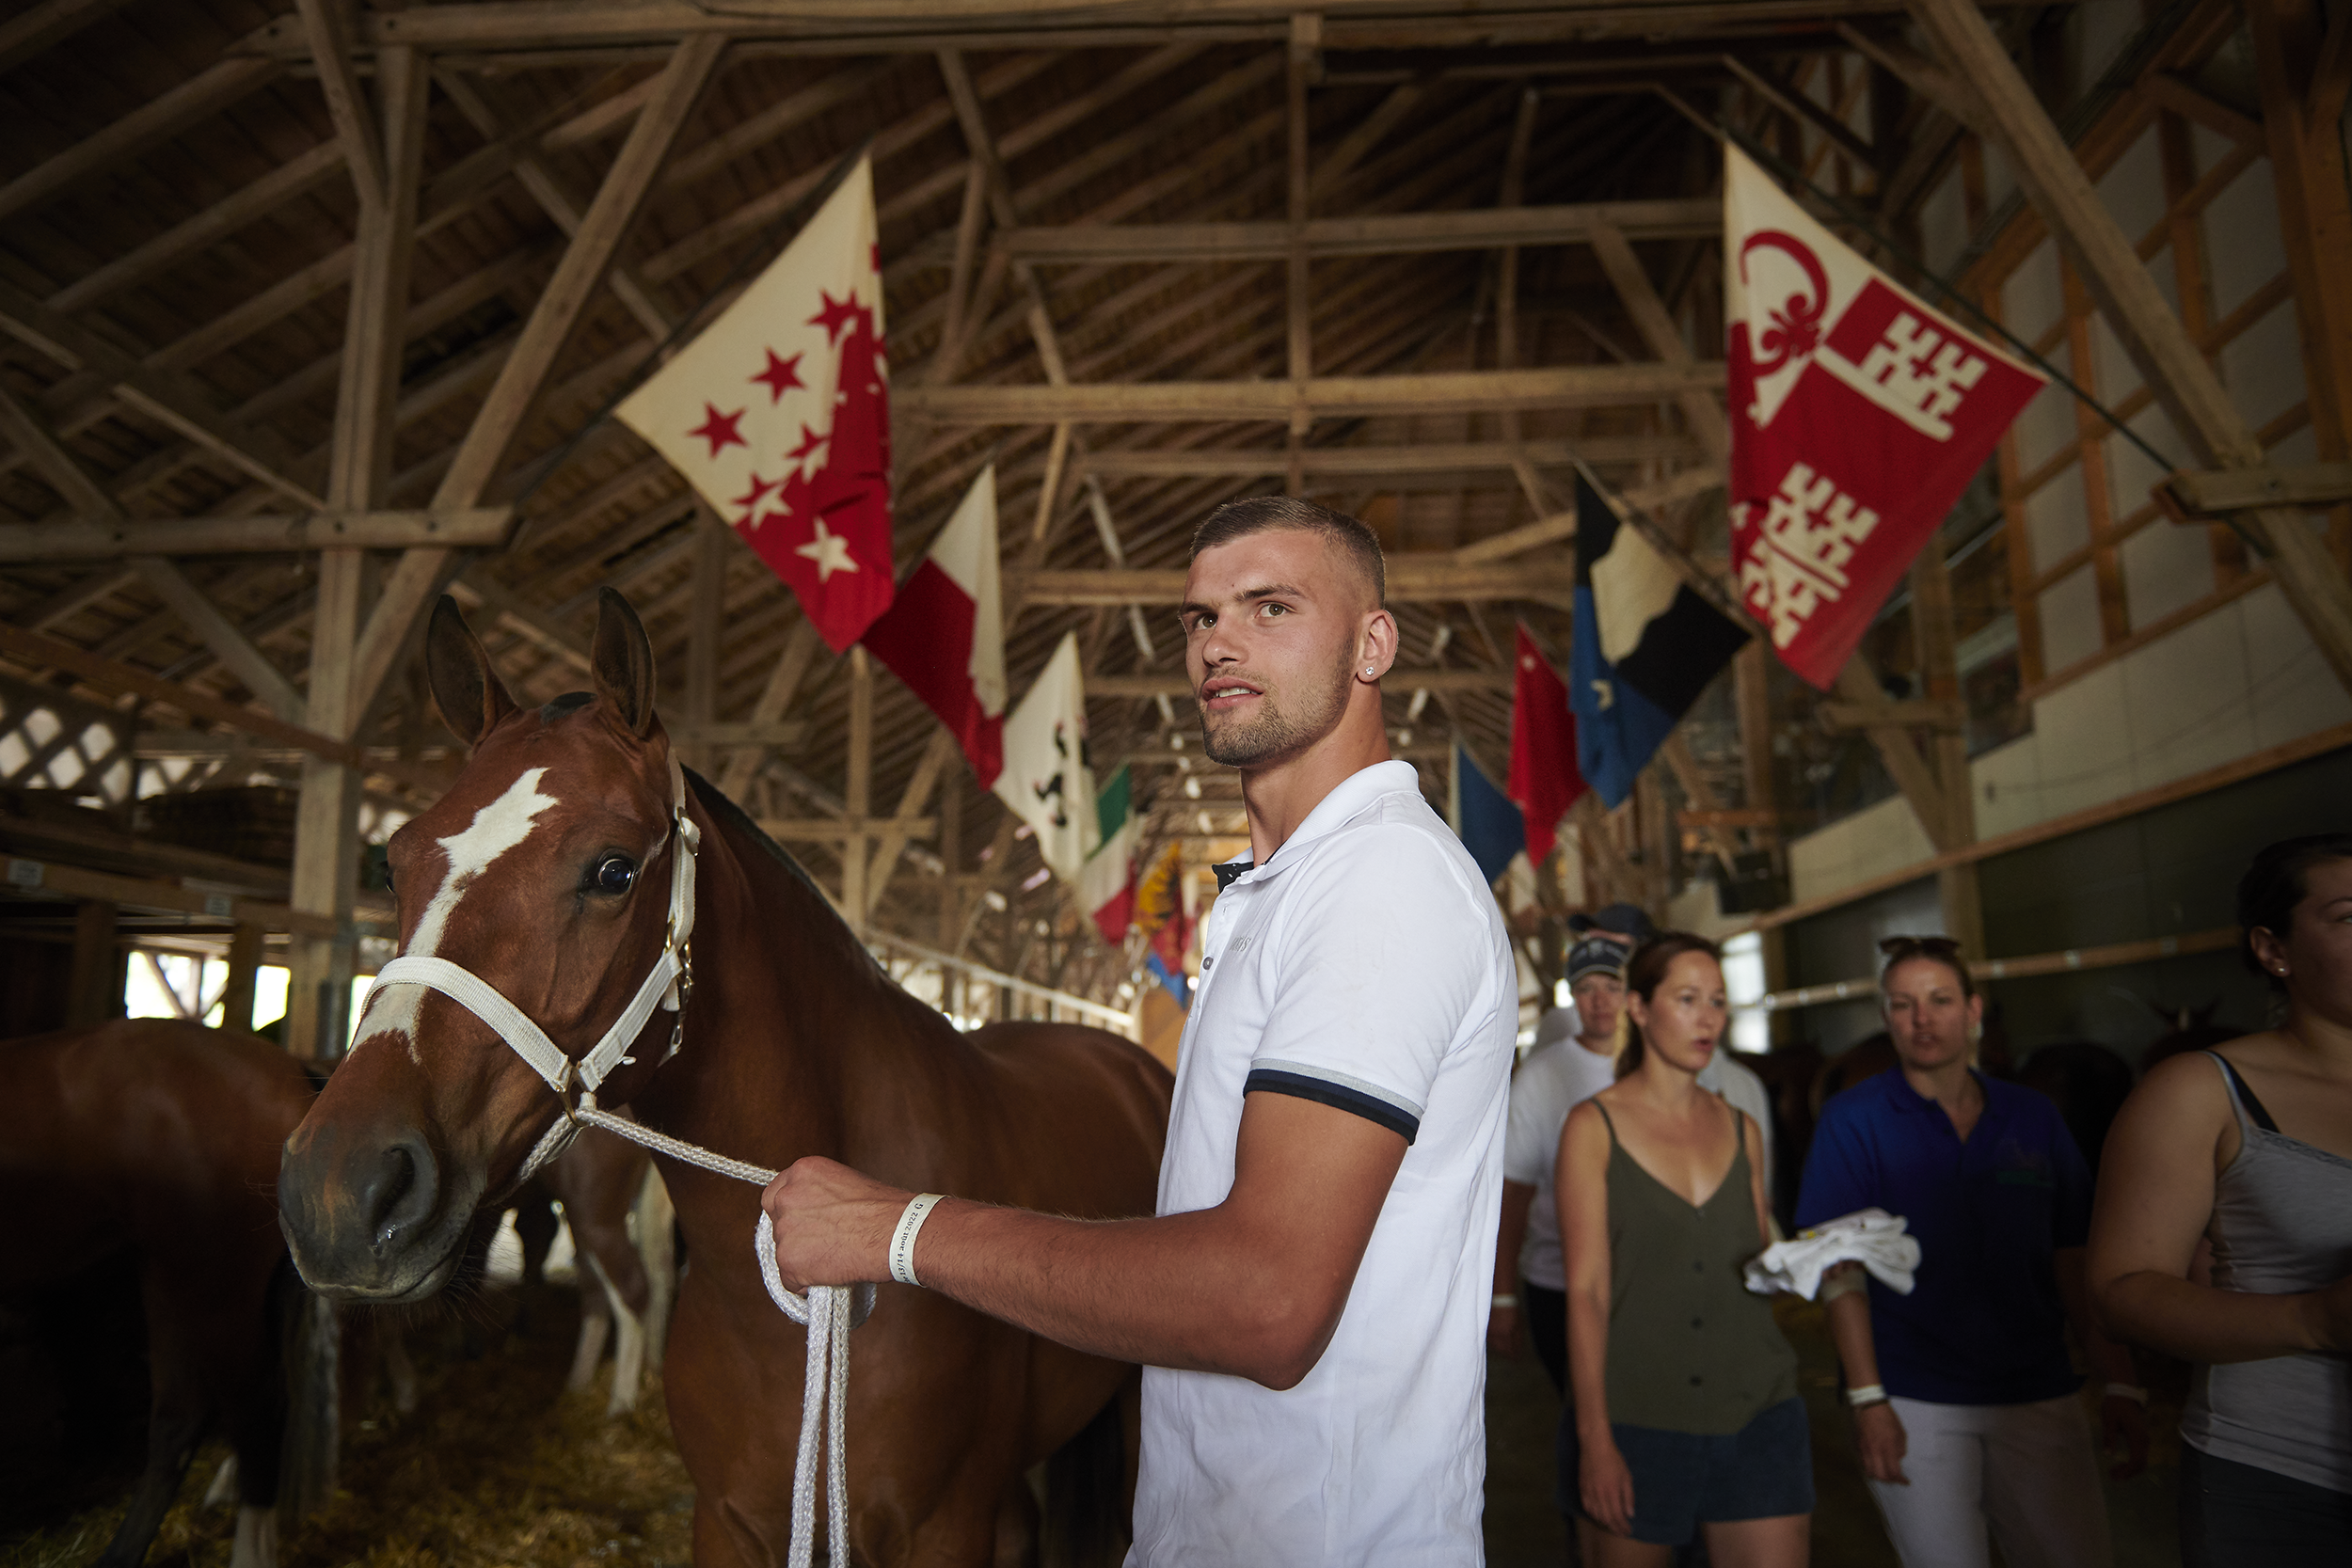 Marché-Concours national de chevaux, Saignelégier